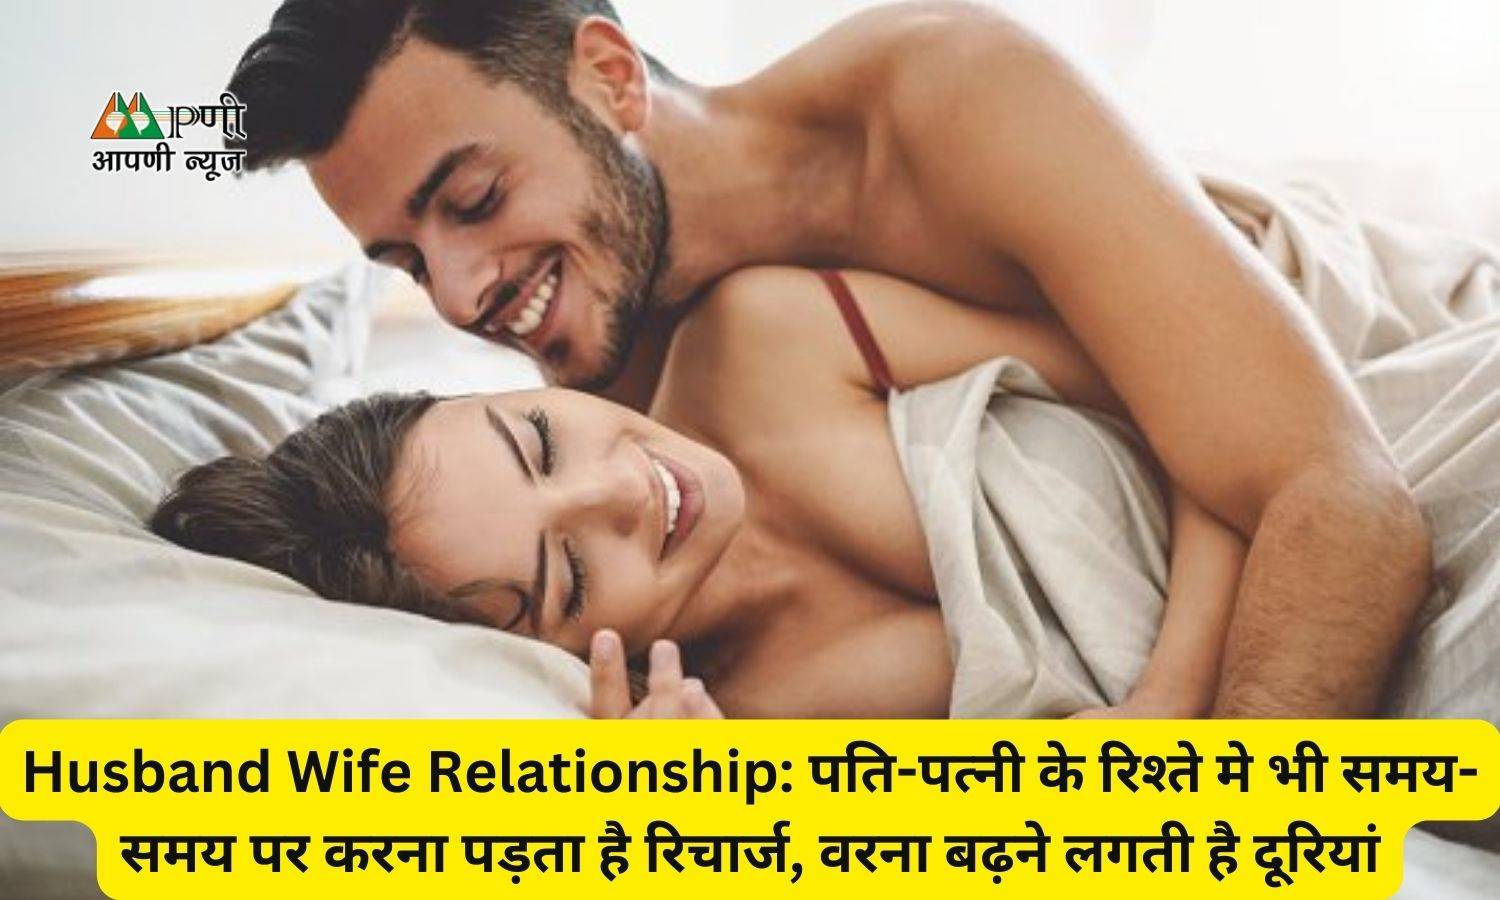 Husband Wife Relationship: पति-पत्नी के रिश्ते मे भी समय-समय पर करना पड़ता है रिचार्ज, वरना बढ़ने लगती है दूरियां